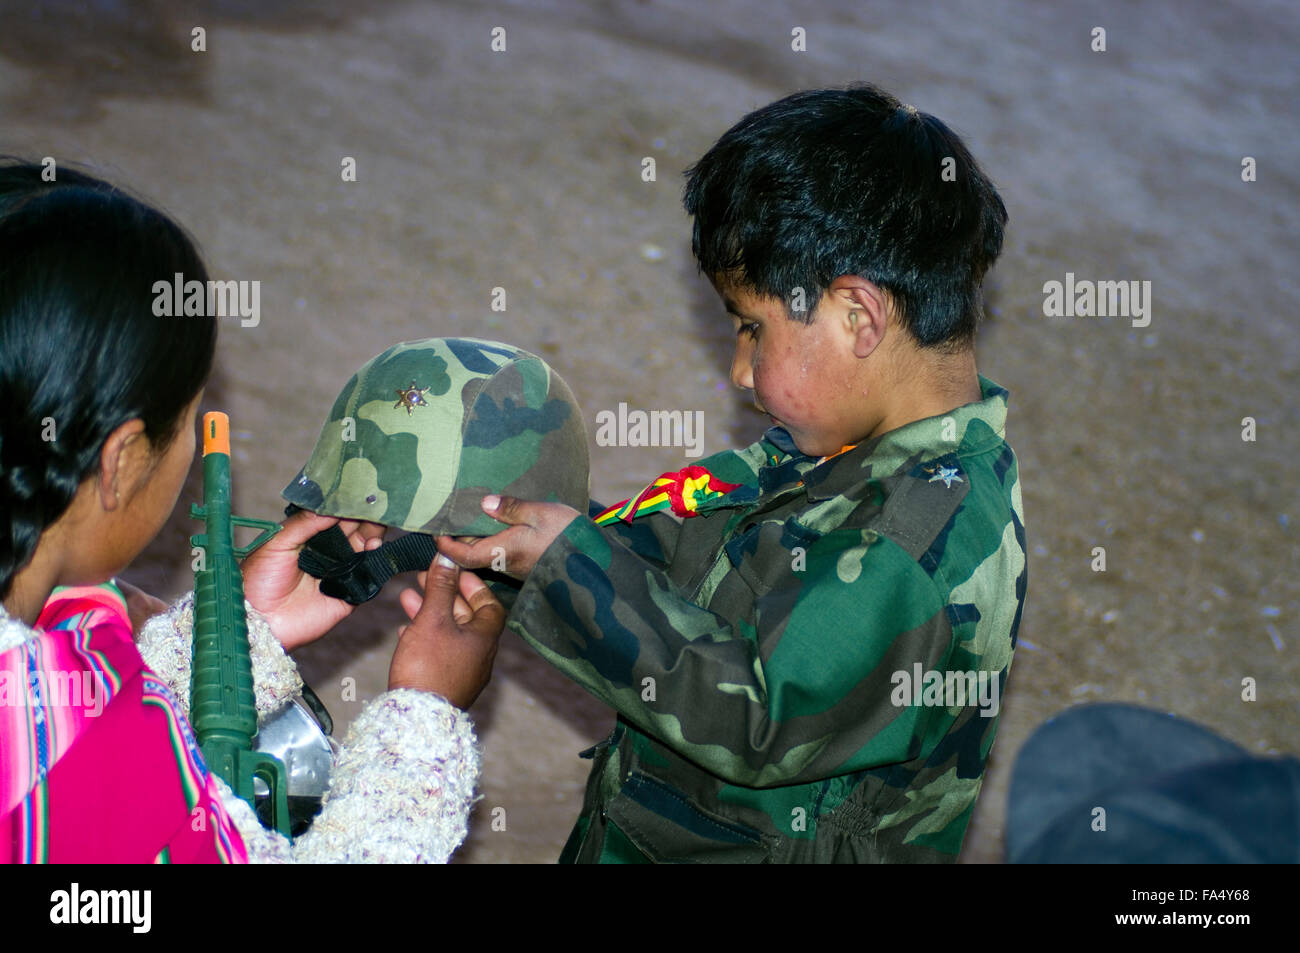 Garçon bolivien dans l'uniforme de soldat prépare à don son casque tandis que sa mère les aide. Banque D'Images